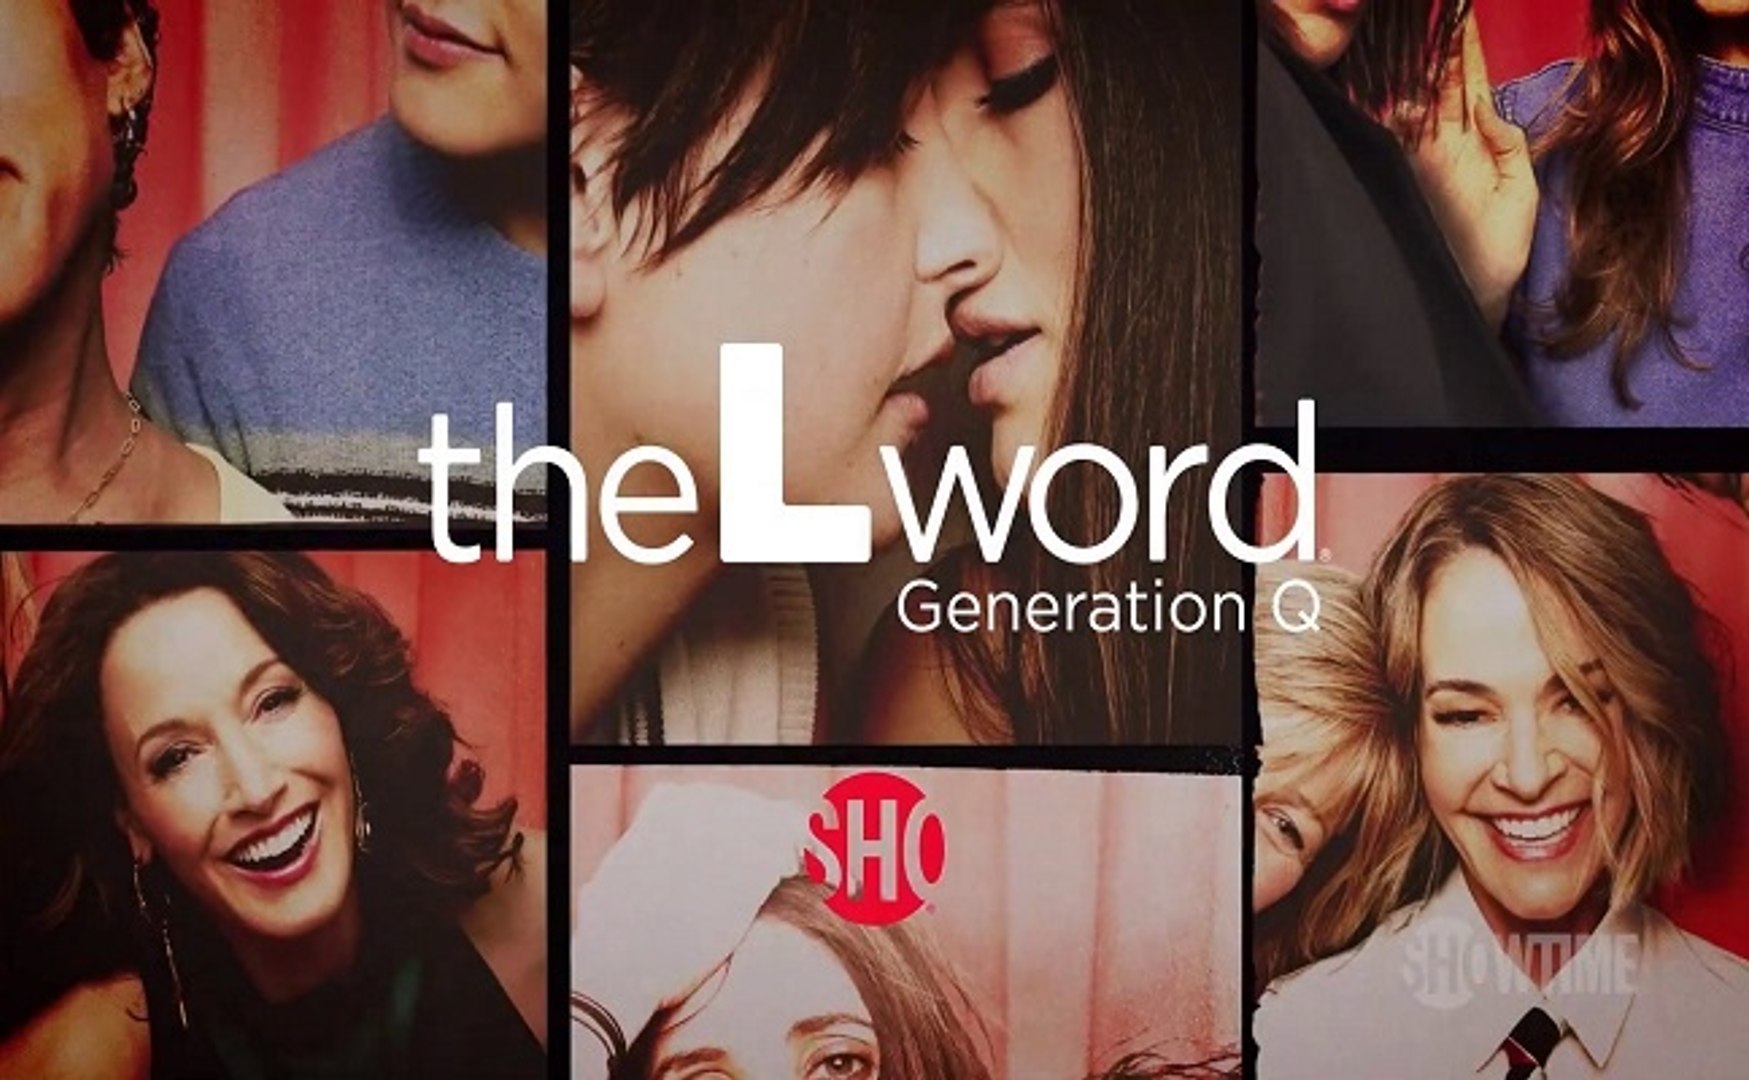 The L Word Generation Q - Trailer Saison 3 - Vidéo Dailymotion